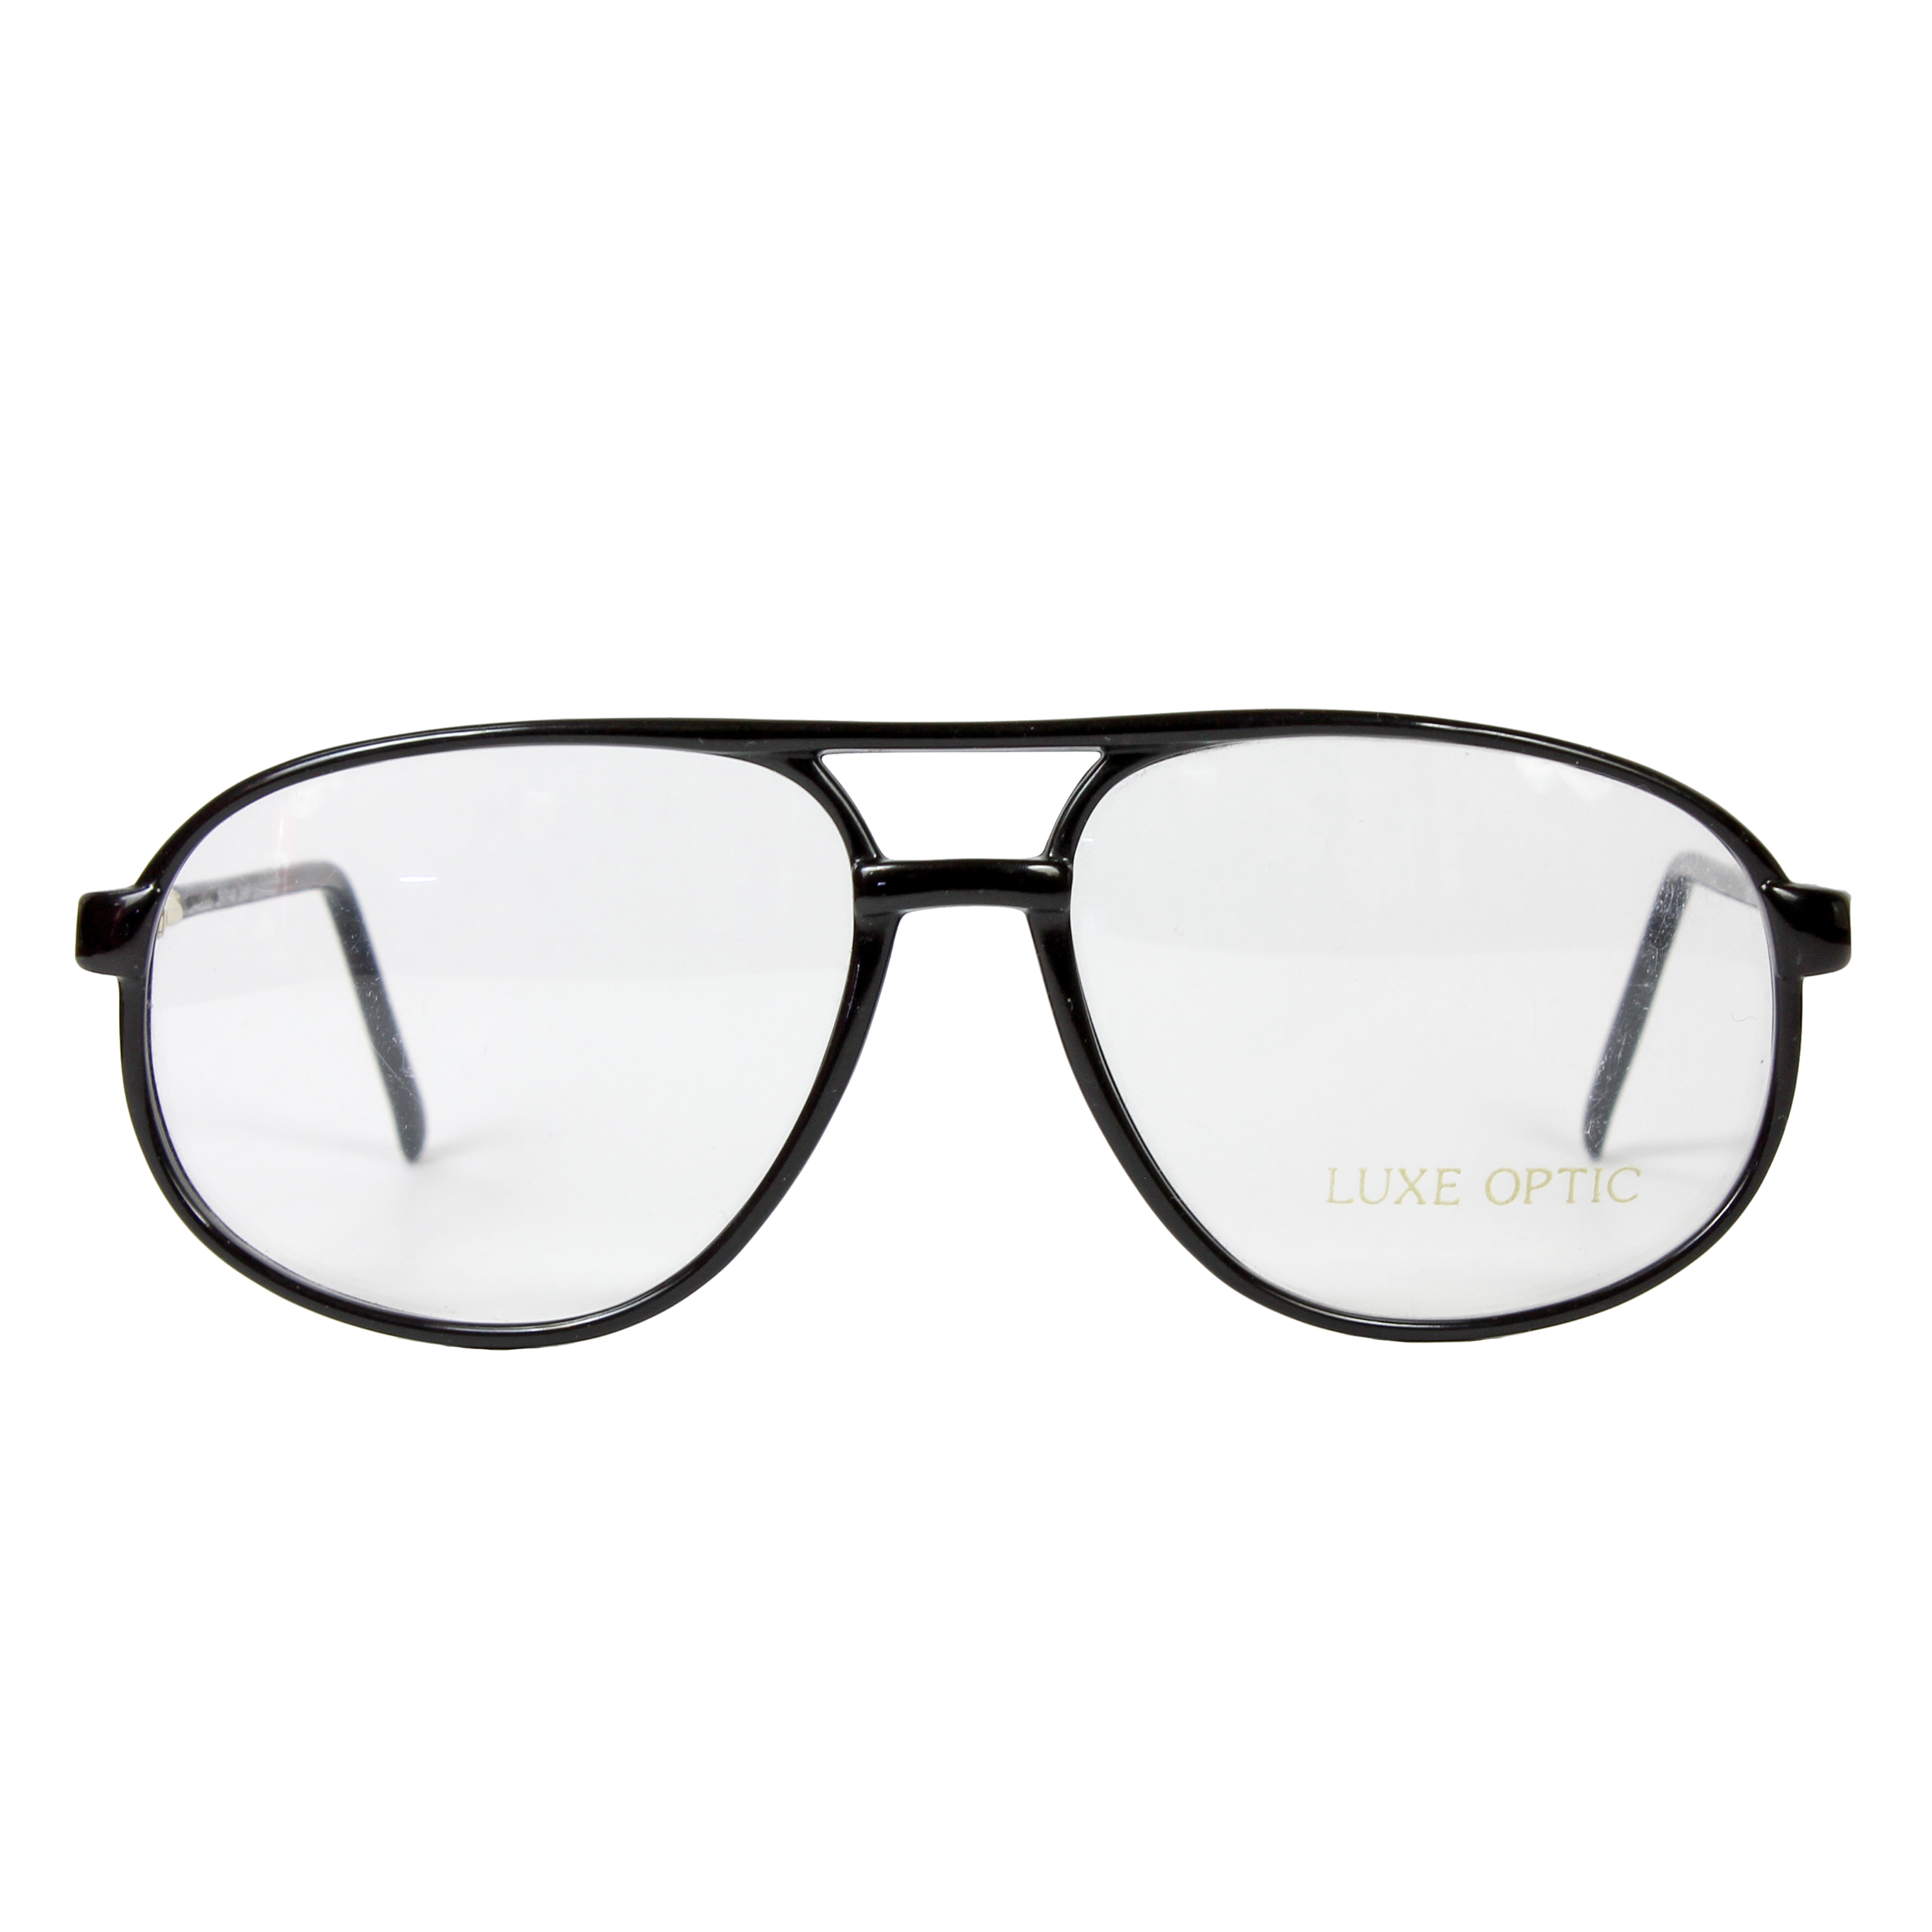 فریم عینک طبی لوکس اپتیک مدل 2844